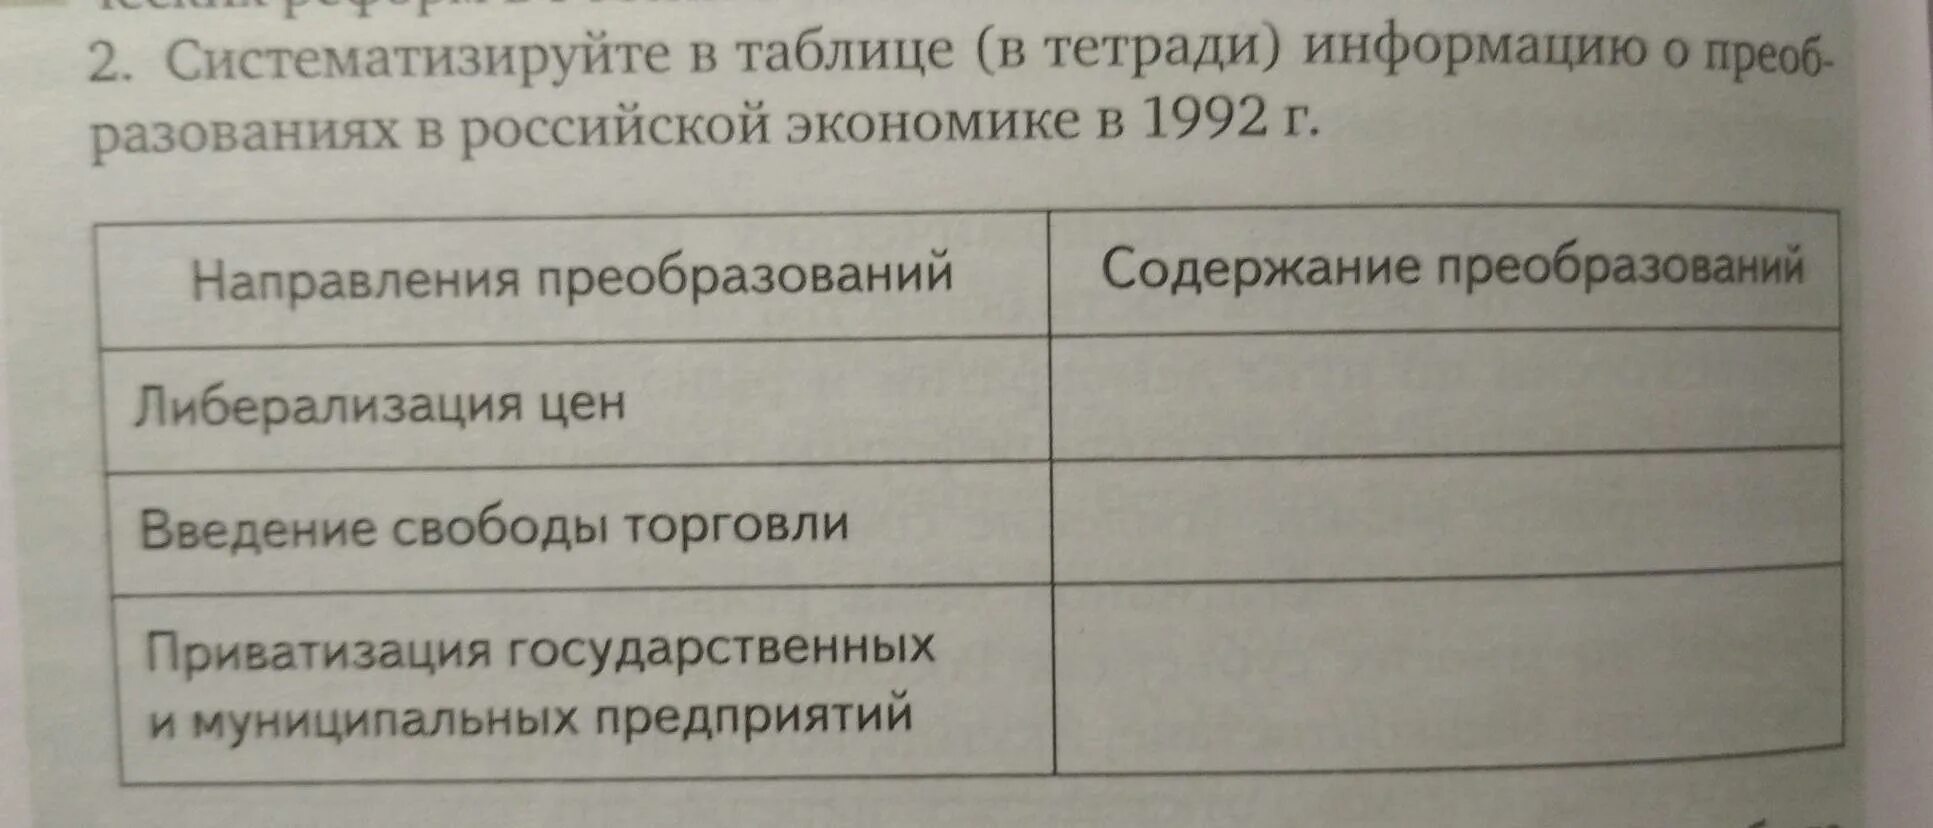 Систематизируйте в таблице. Таблица о преобразованиях в Российской экономике в 1992 году. Преобразования в Российской экономике 1992 таблица. Систематизируйте систематизируйте в таблице. Систематизируйте информацию о политике